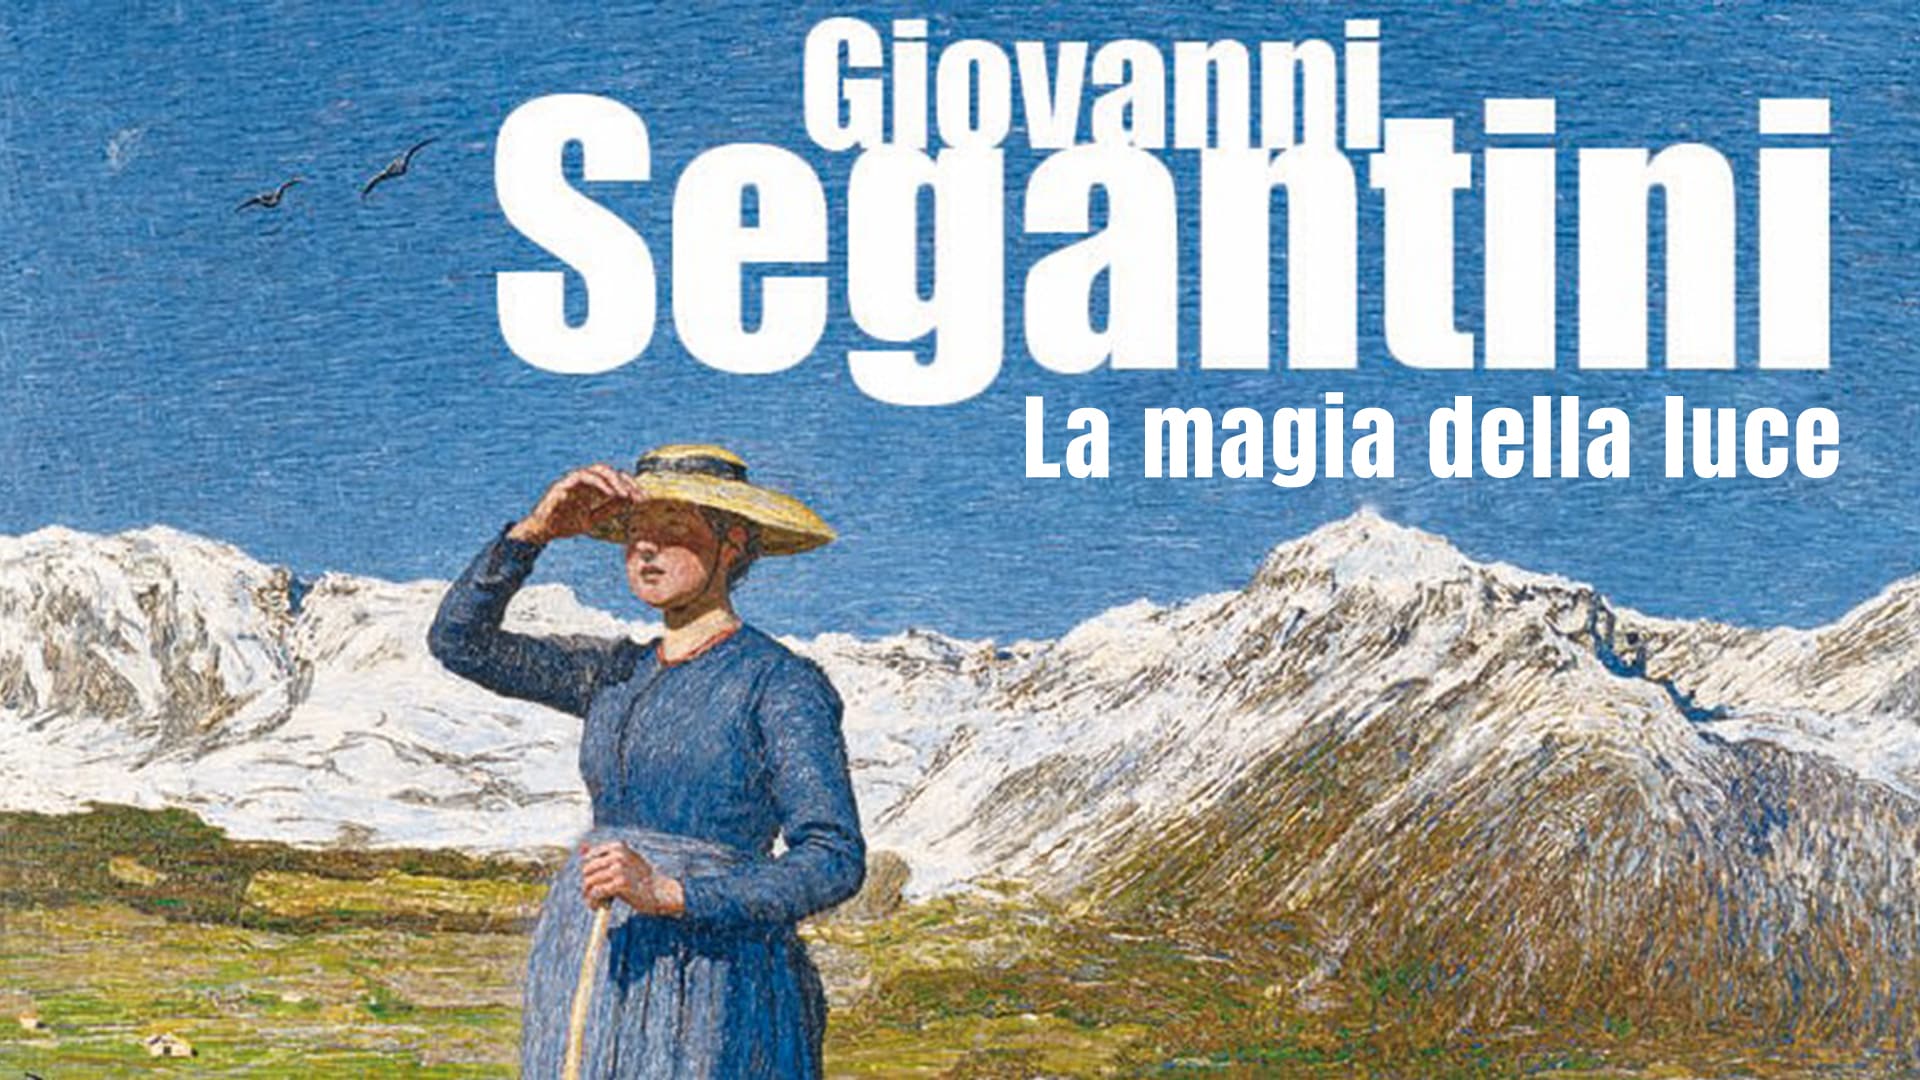 Giovanni Segantini - La magia della luce